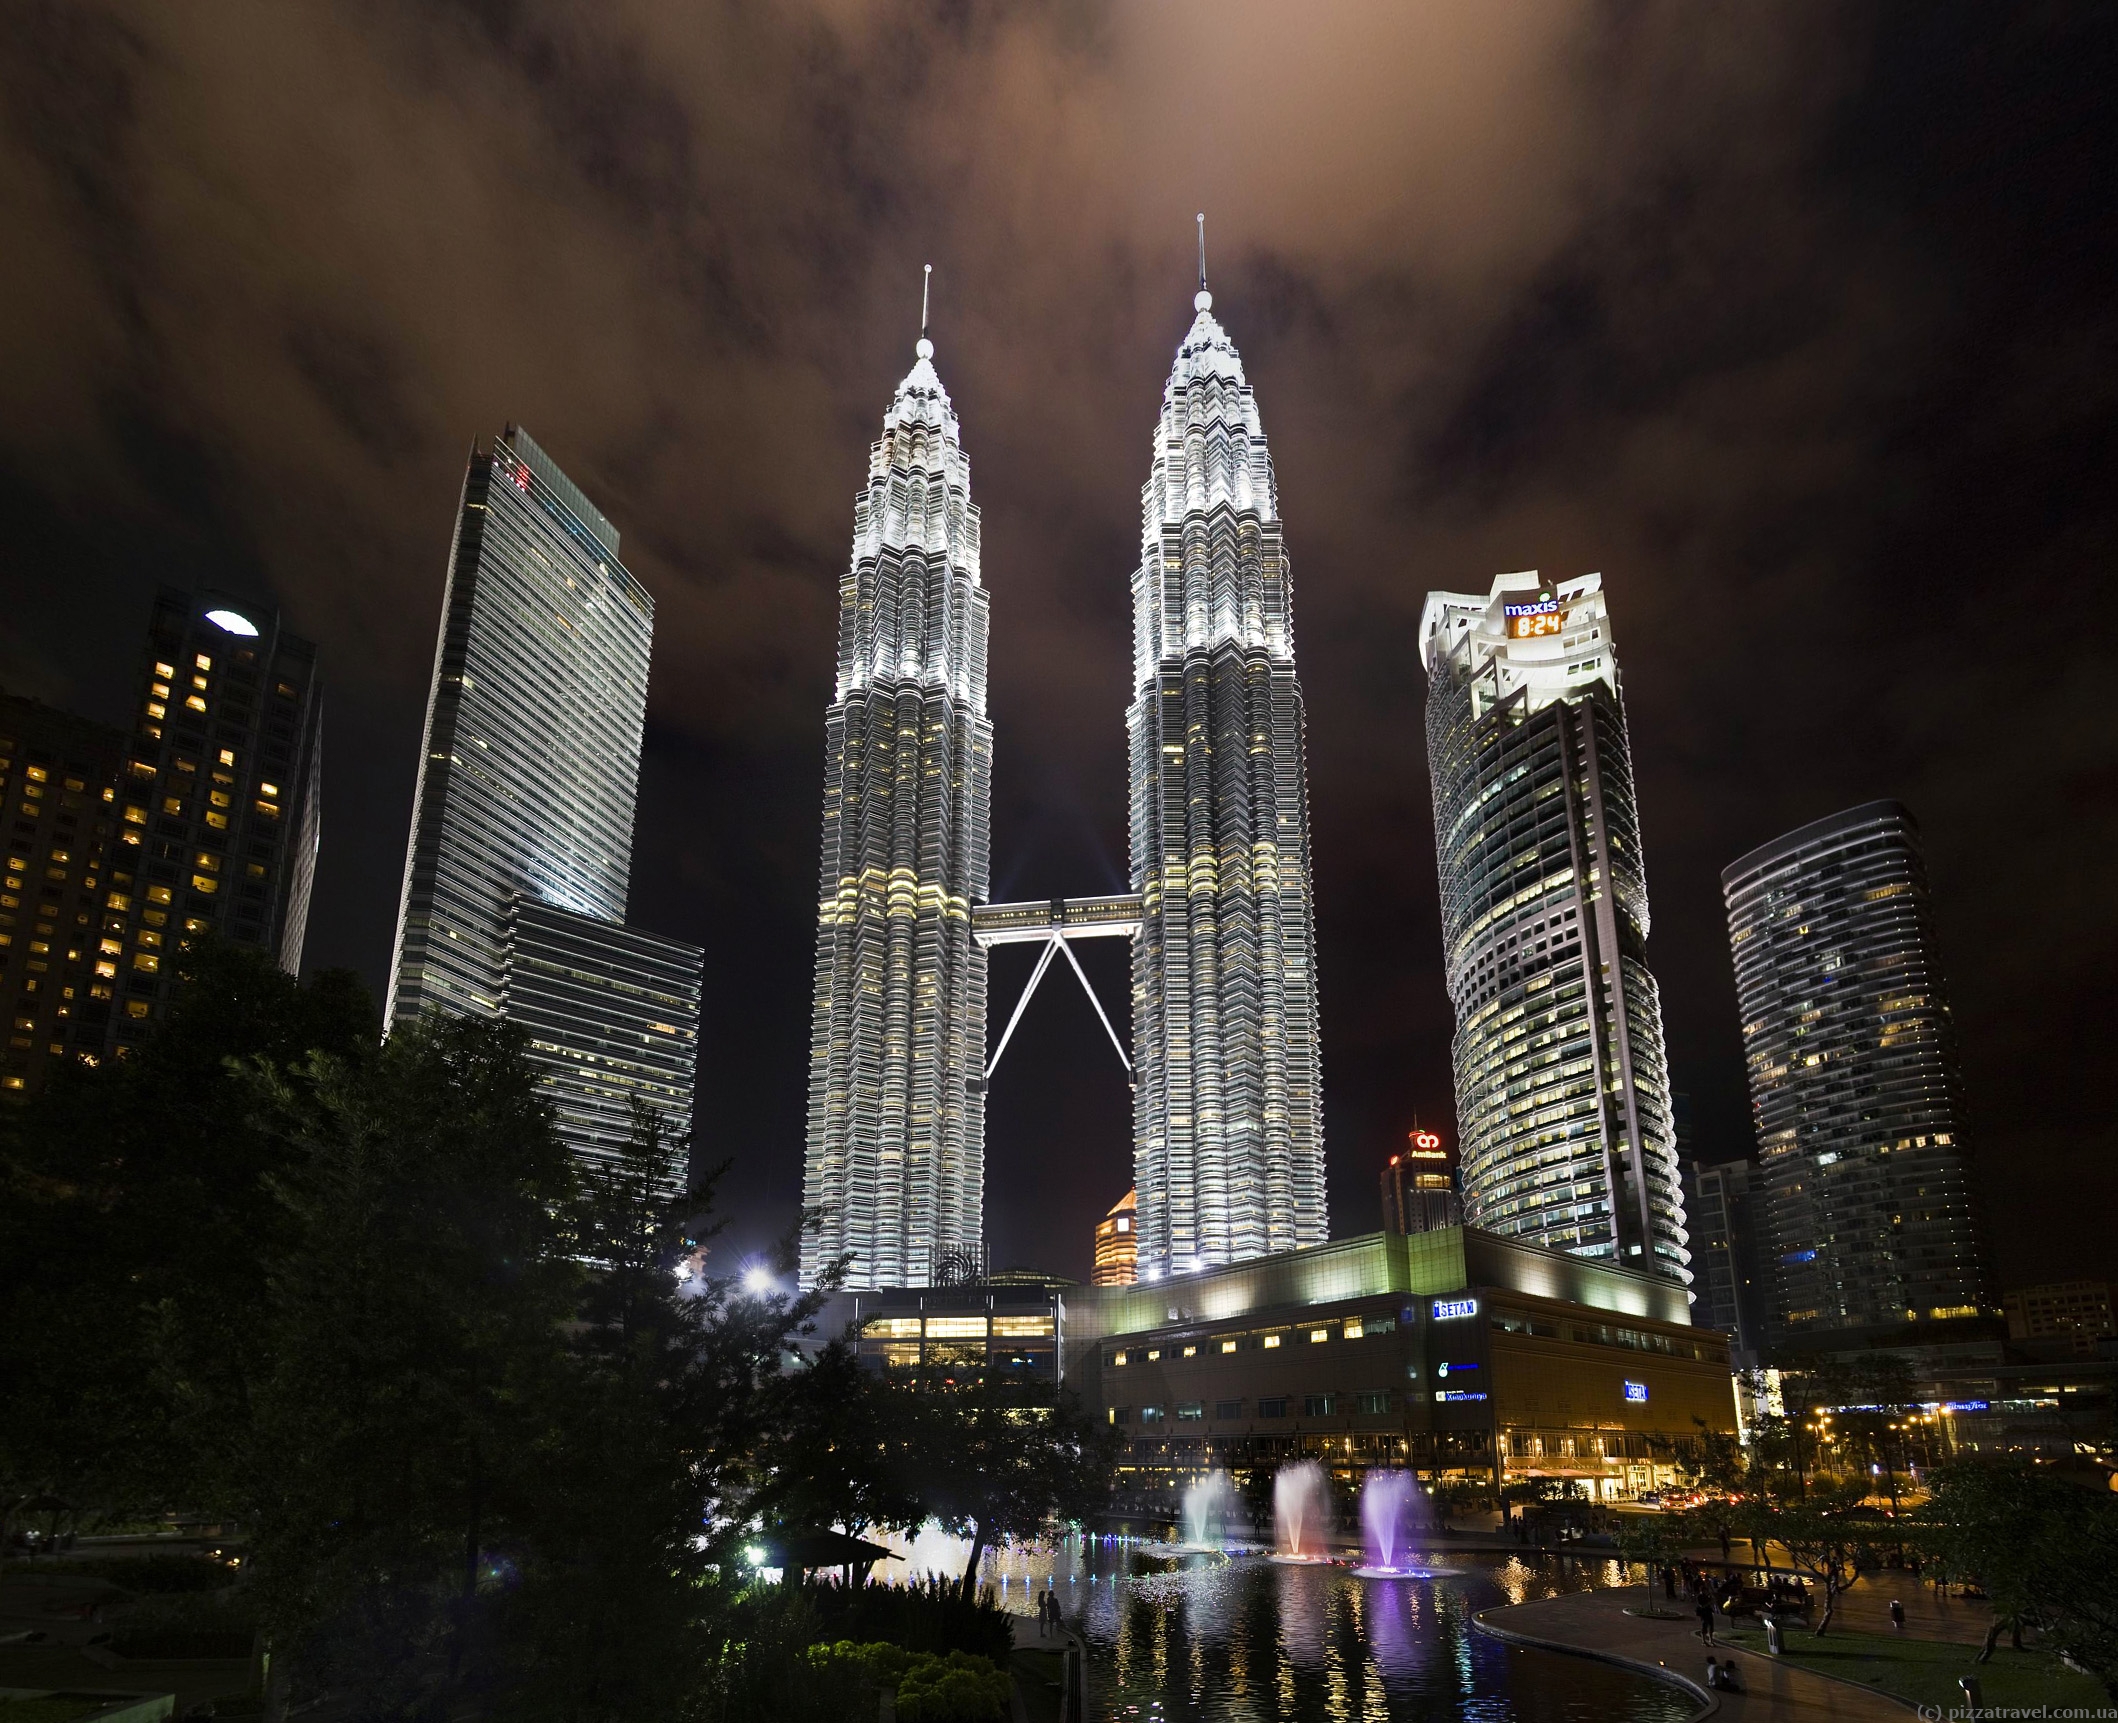 Kuala Lumpur - Malaysia - Blog about interesting places